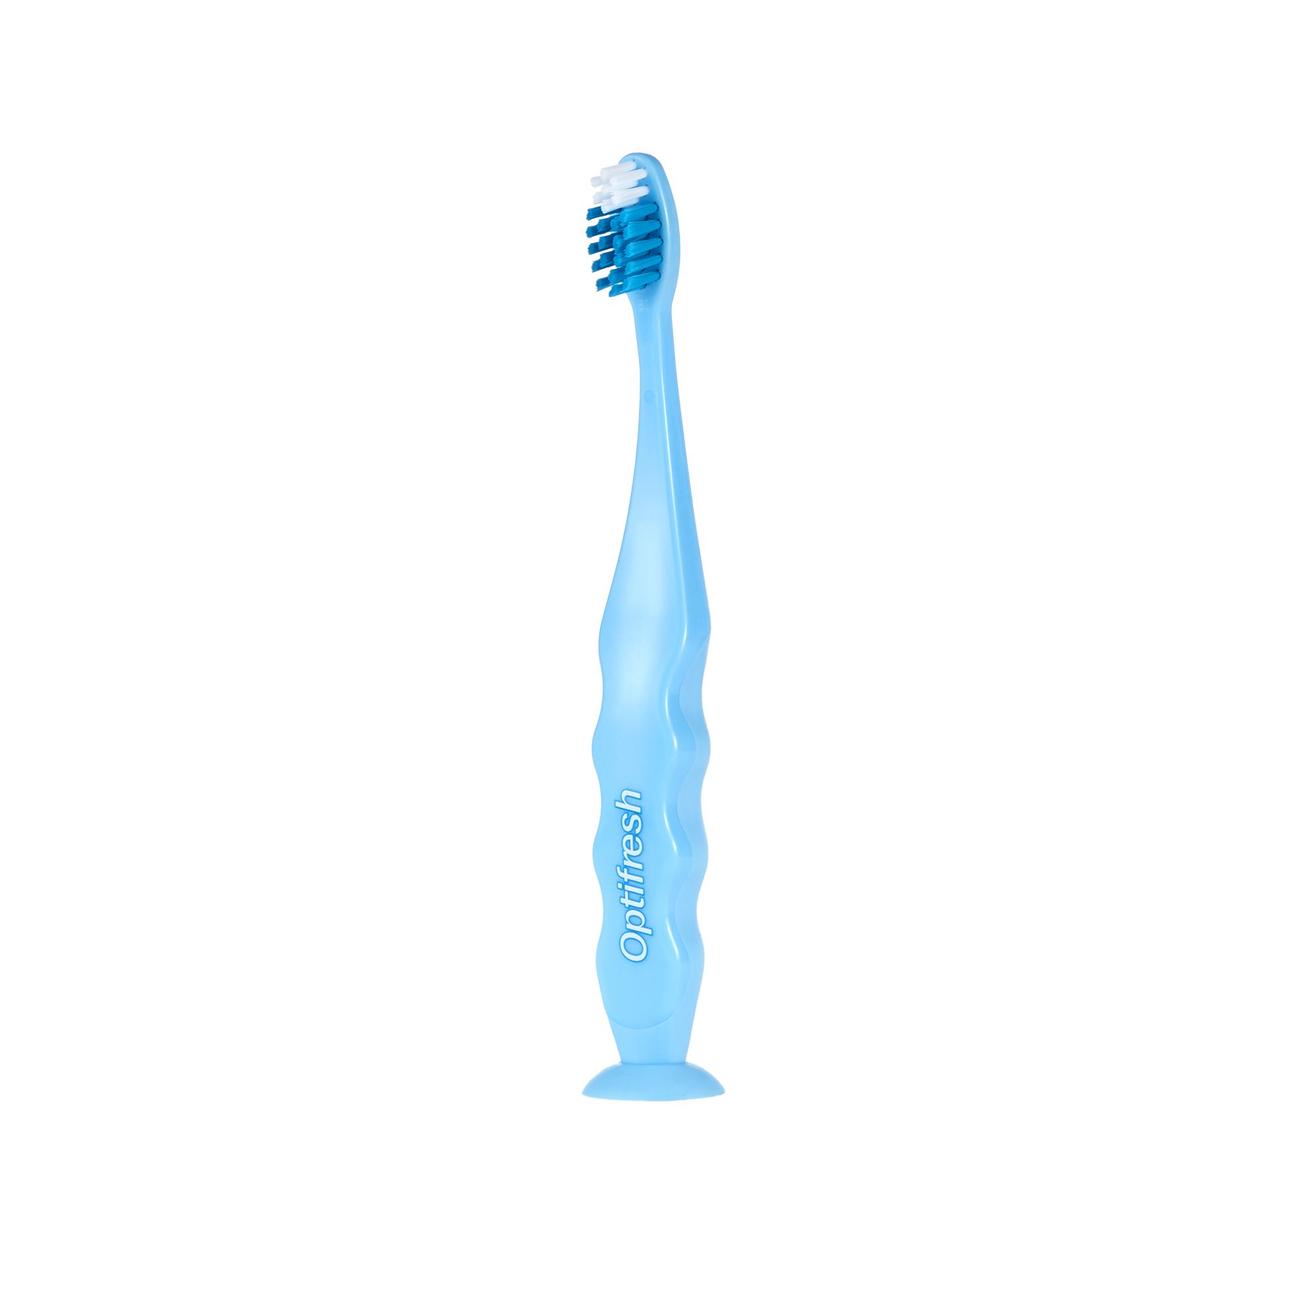 Tilbud: Kids Soft Toothbrush - Blue kr 55 på Oriflame